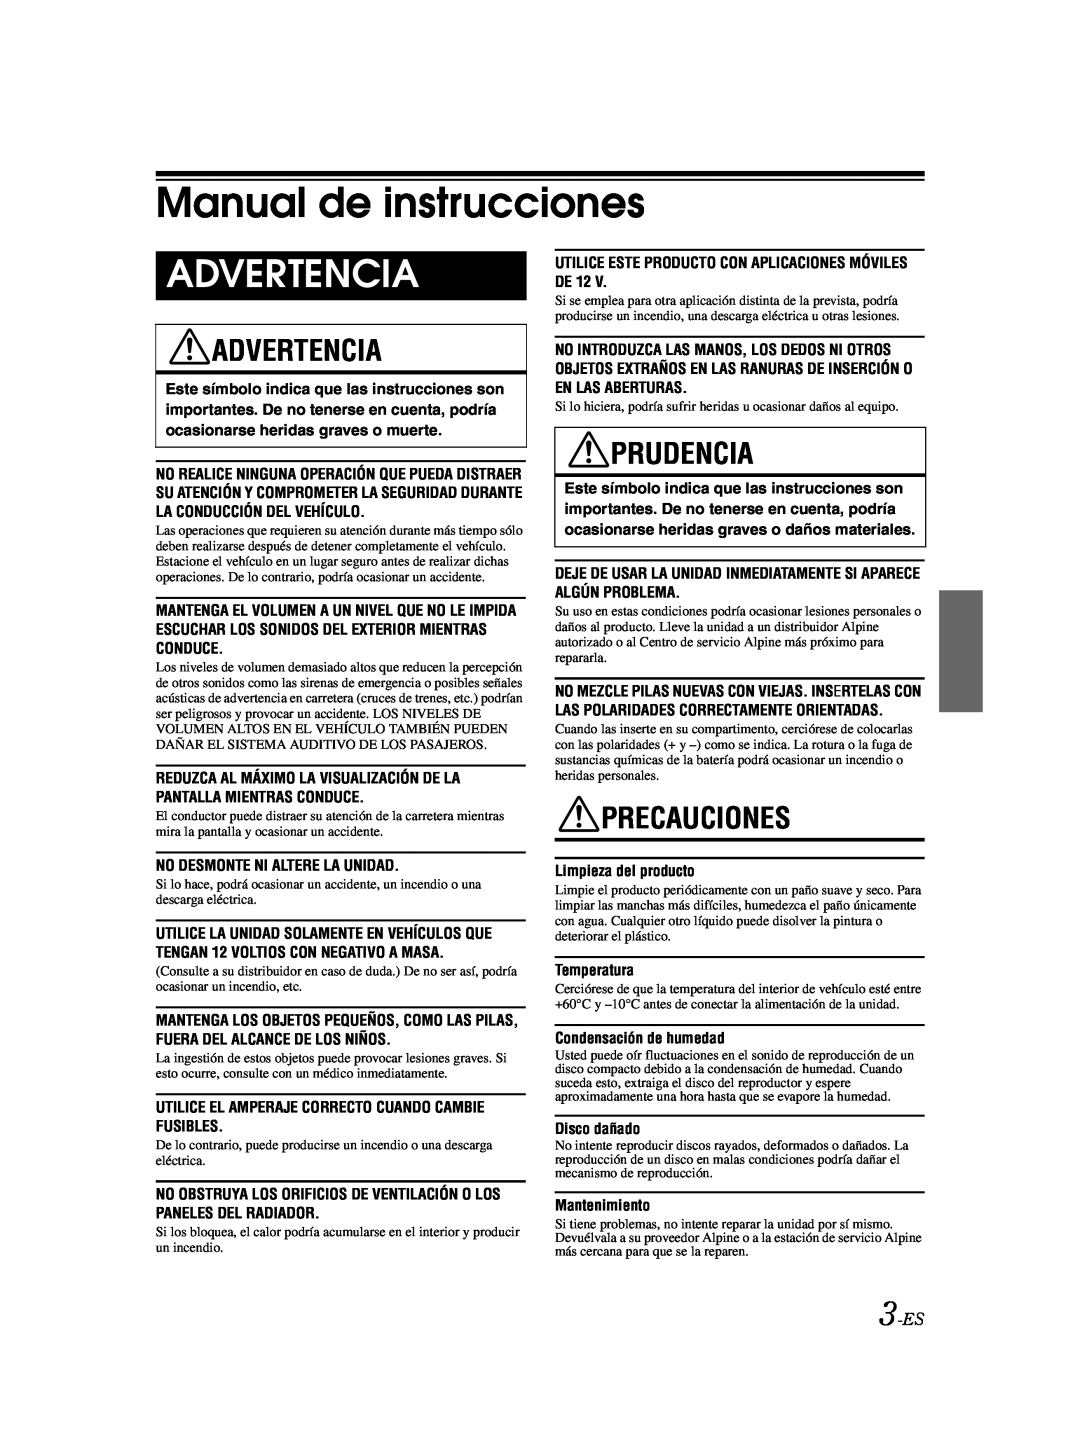 Alpine CDA-9885 owner manual Manual de instrucciones, Advertencia, Prudencia, Precauciones, 3-ES 